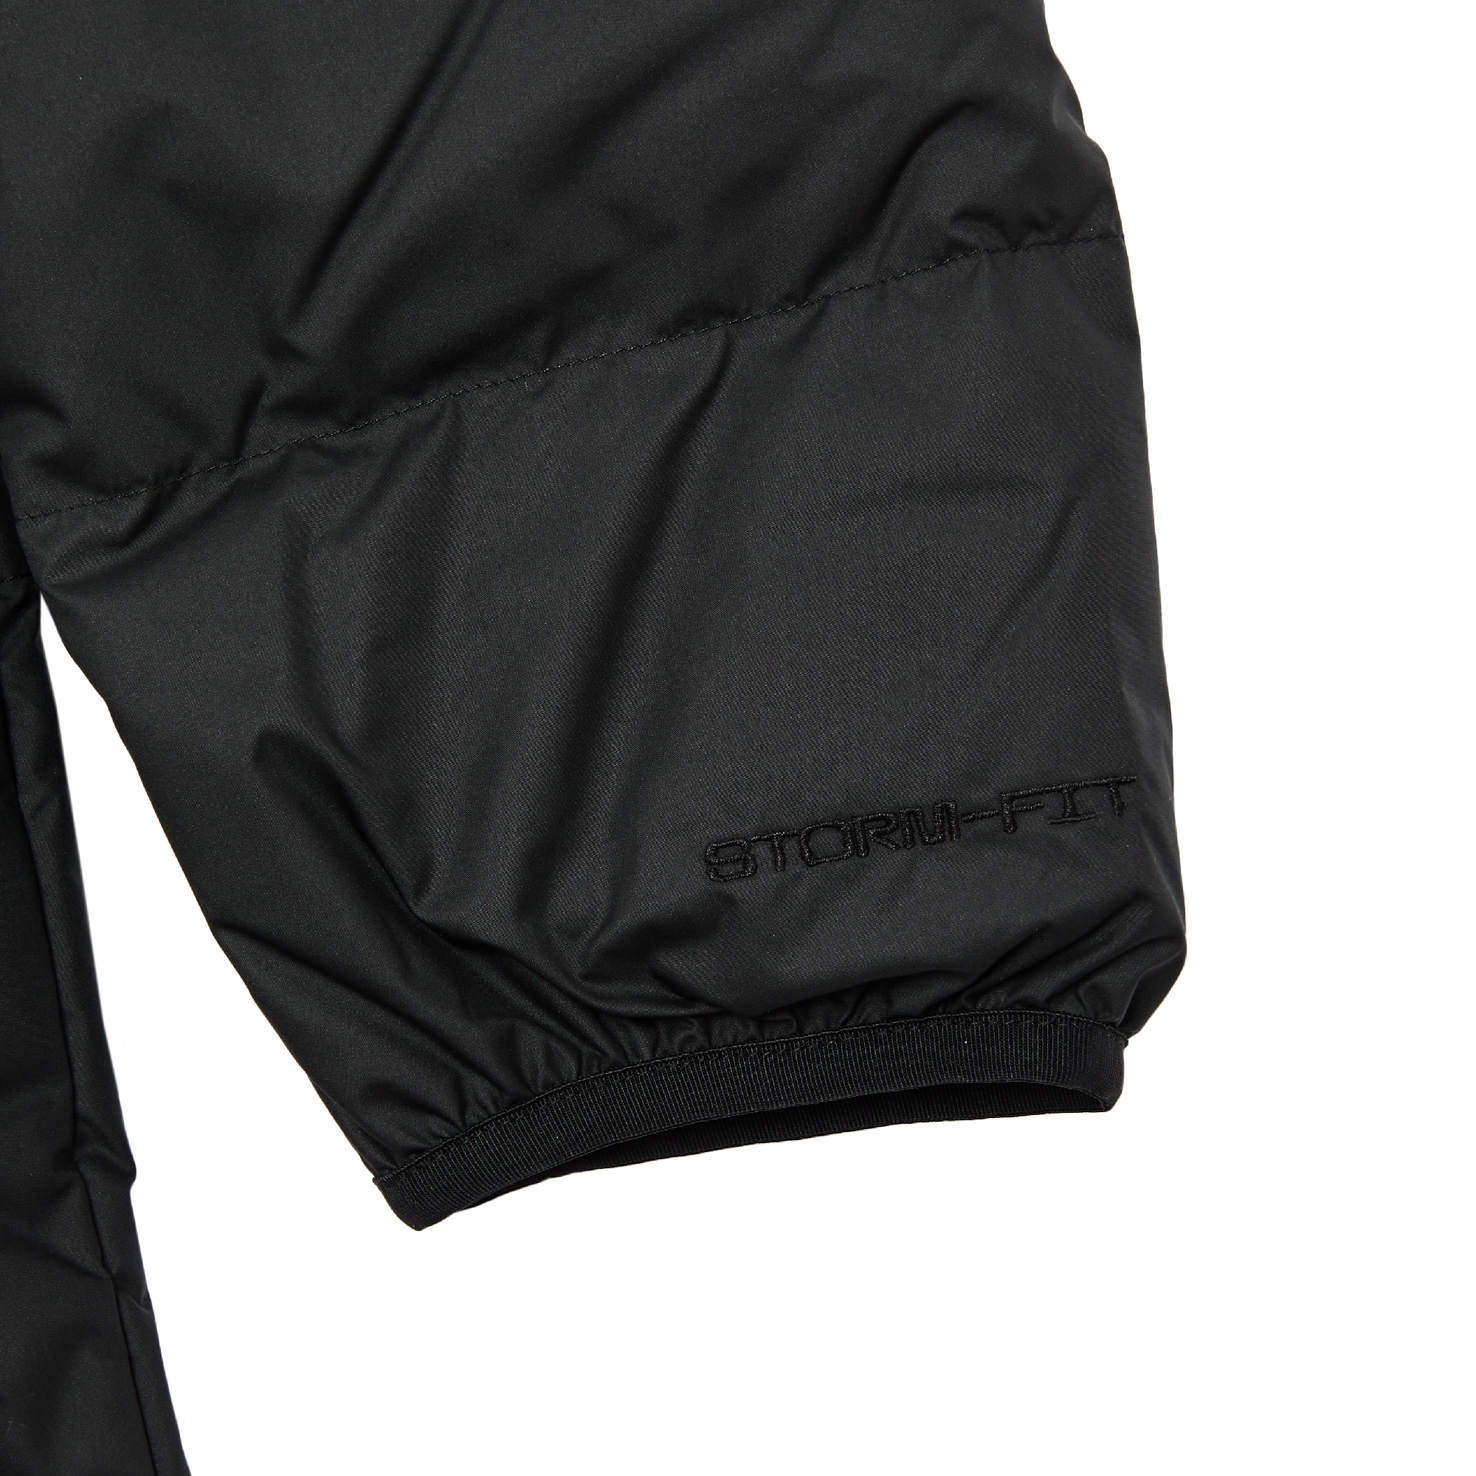 Sportswear Storm-FIT Windrunner NIKE, размер 48-50, цвет черный NKDD6788 - фото 5